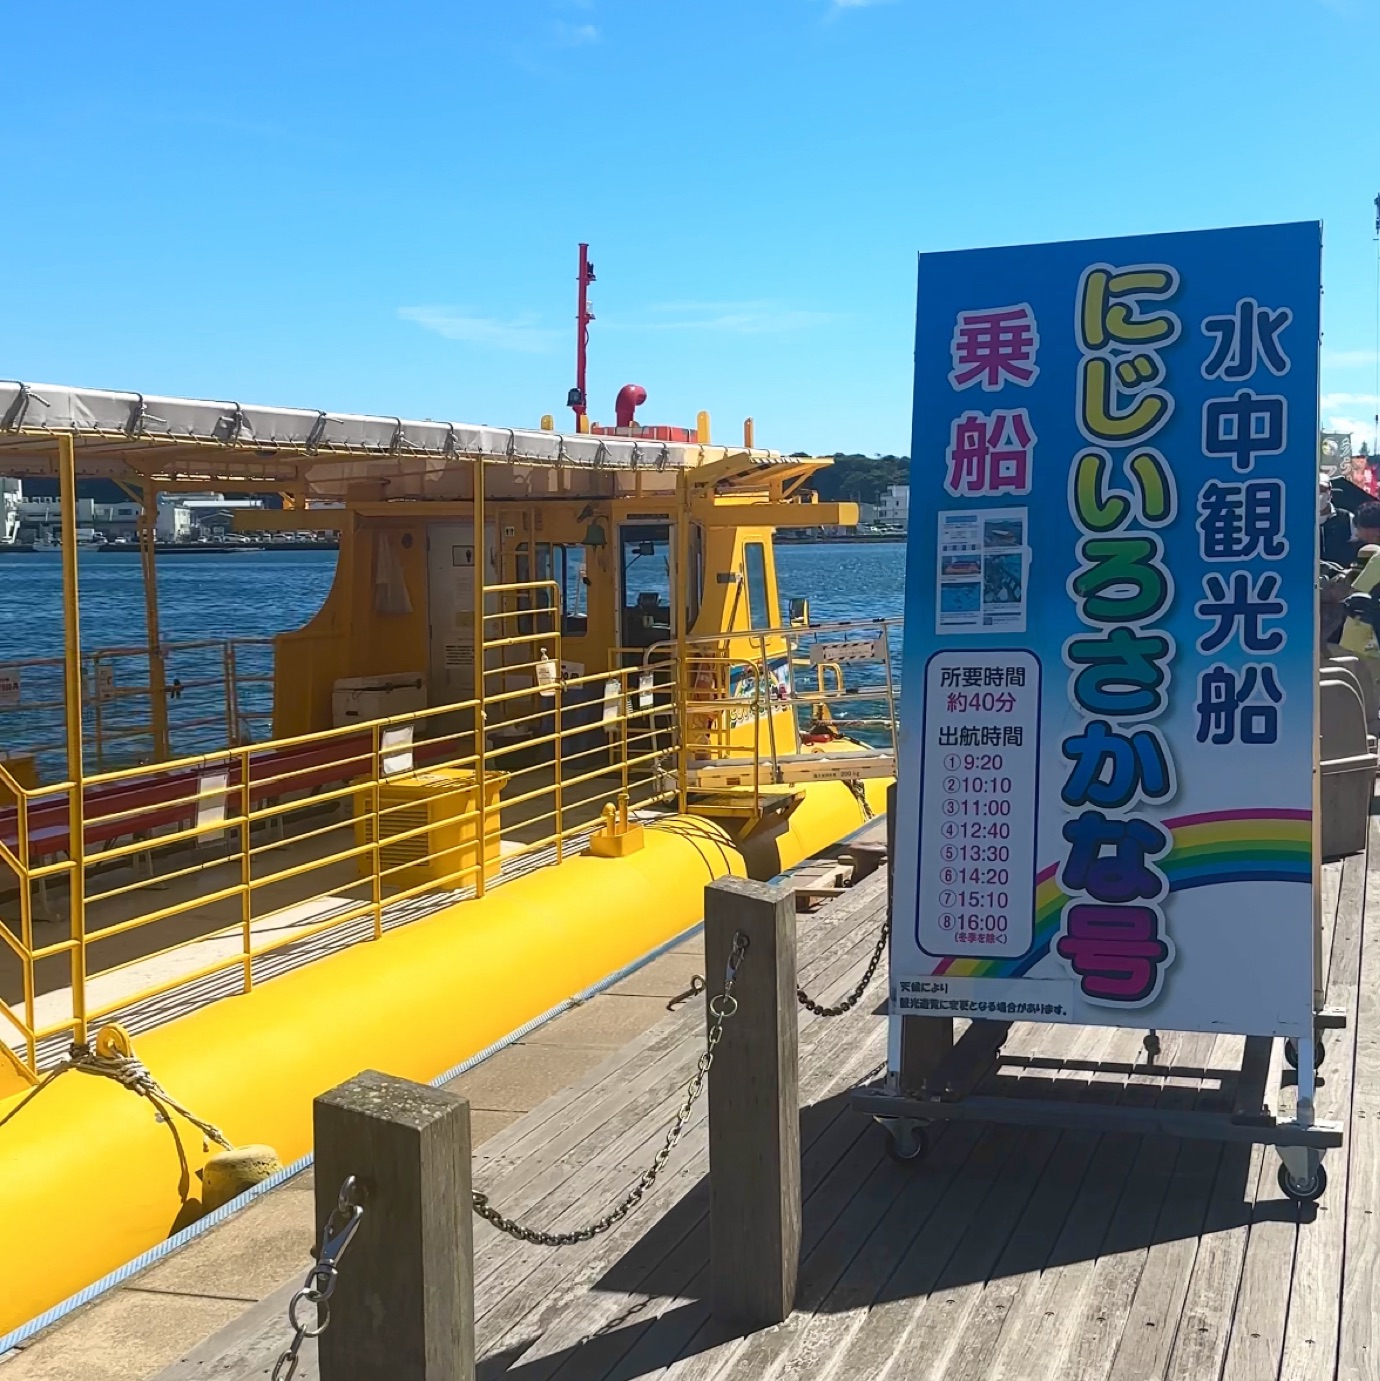 📍水下观光船Nijirosaka / Misaki / Kanagawa